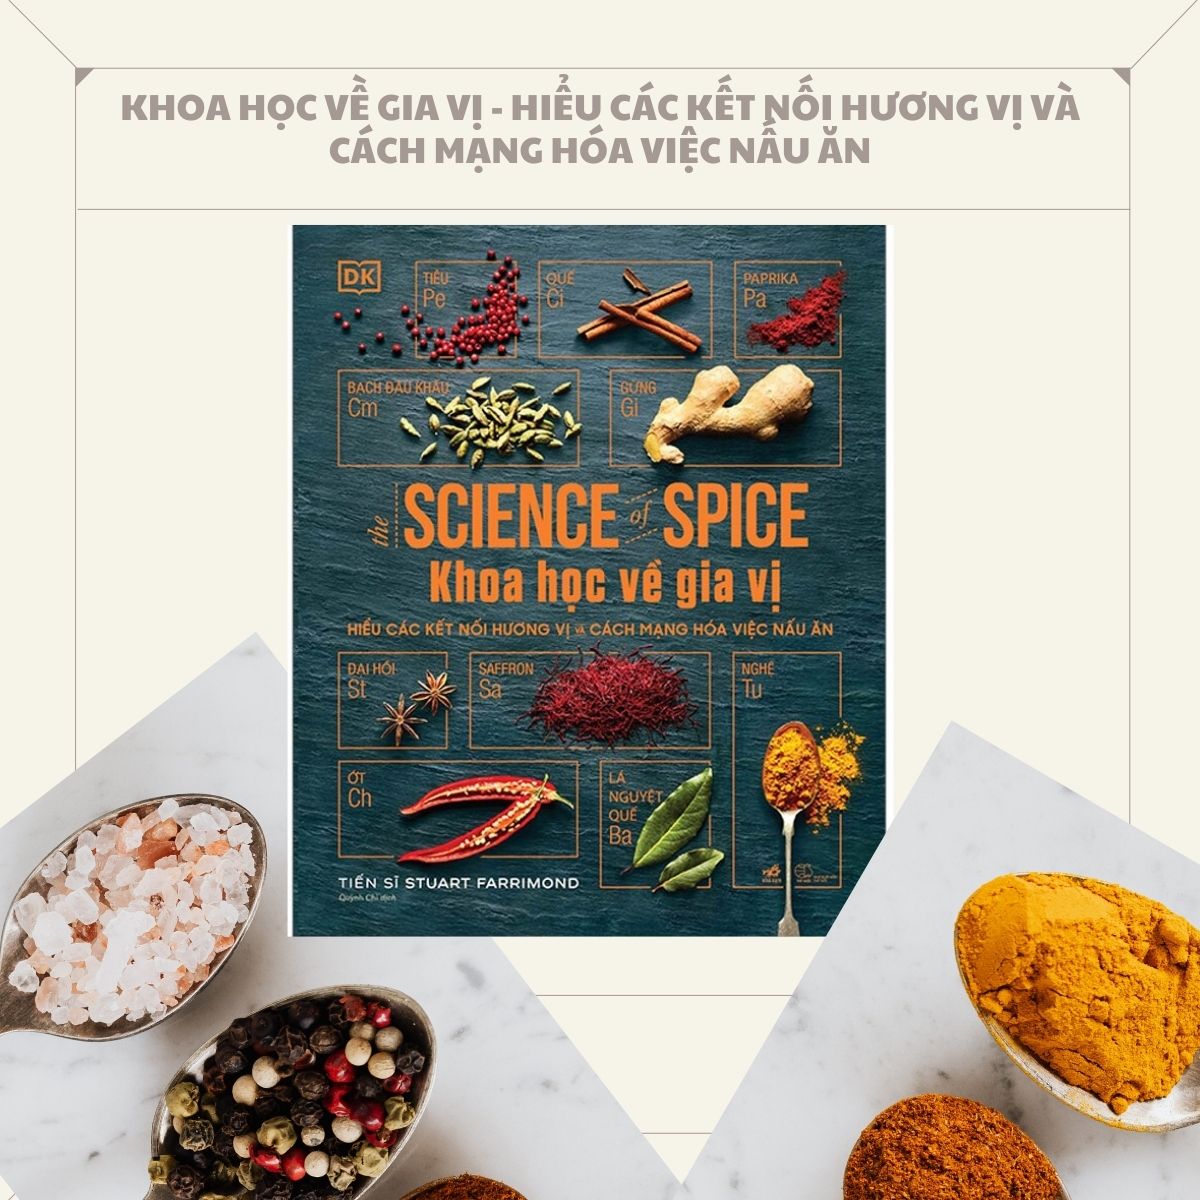 Khoa Học Về Gia Vị - Hiểu Các Kết Nối Hương Vị Và Cách Mạng Hóa Việc Nấu Ăn (Bìa Cứng) - NNA